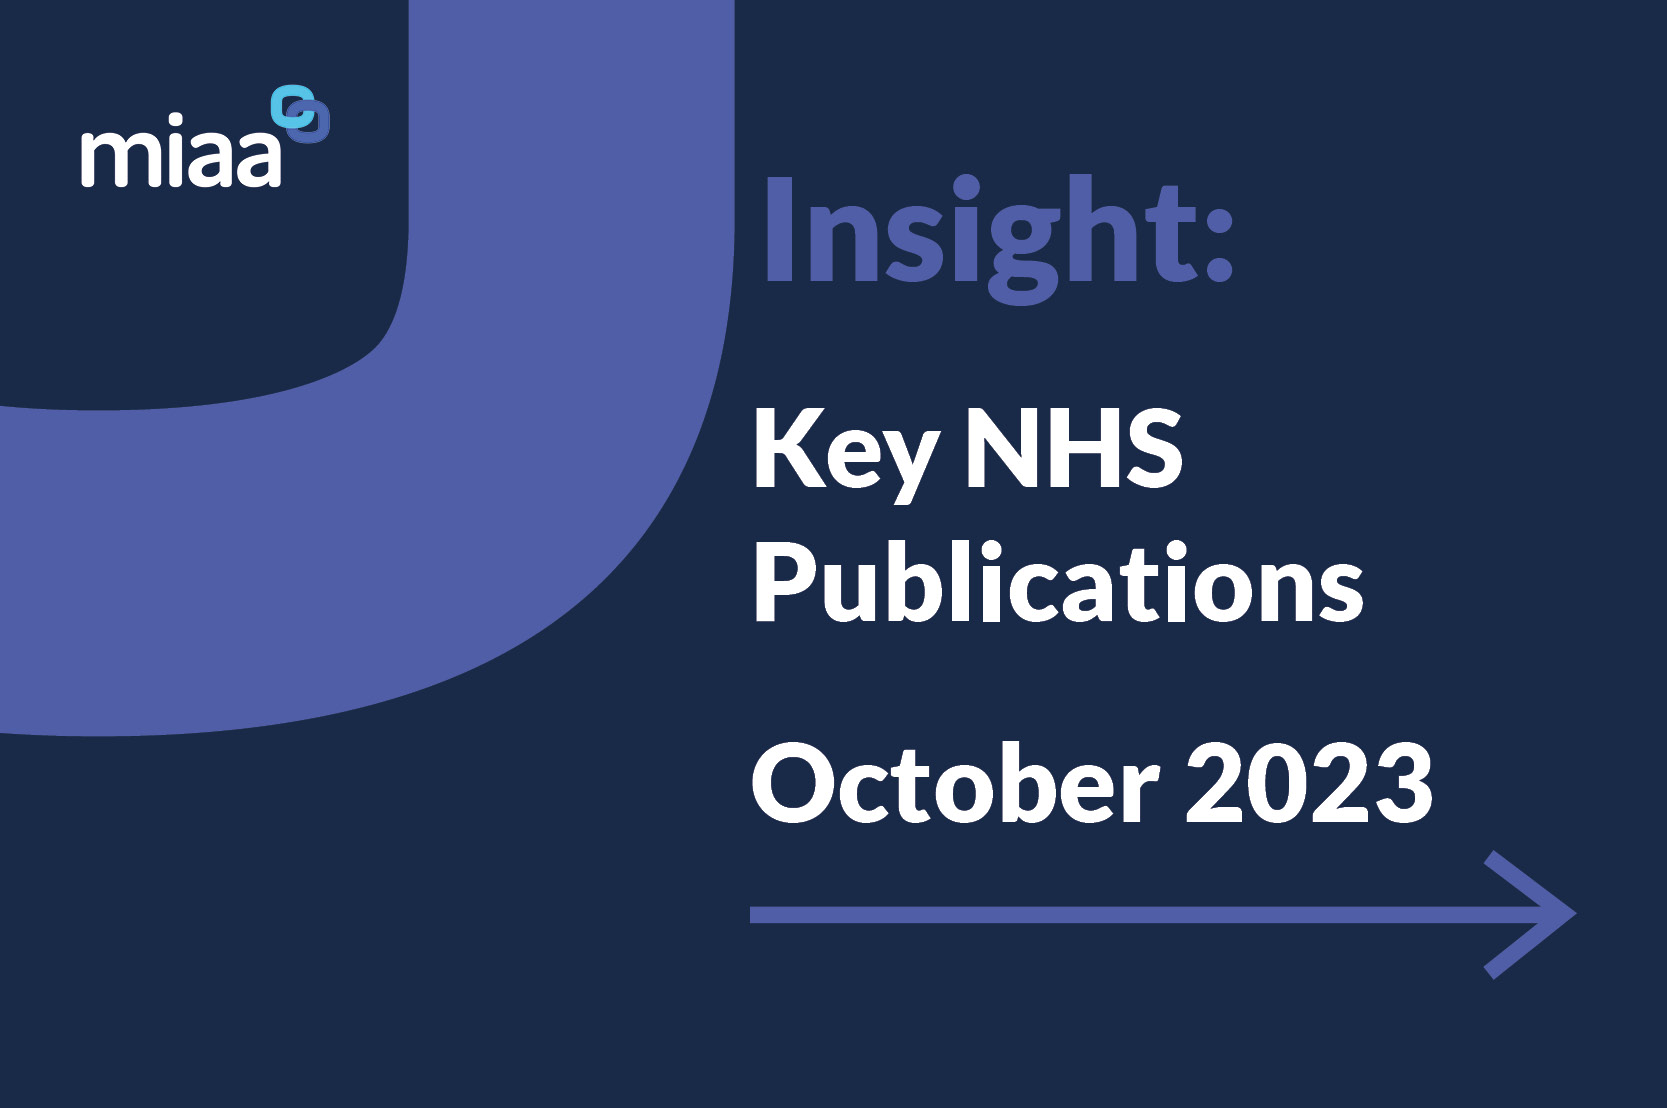 Key NHS Publications - October 2023